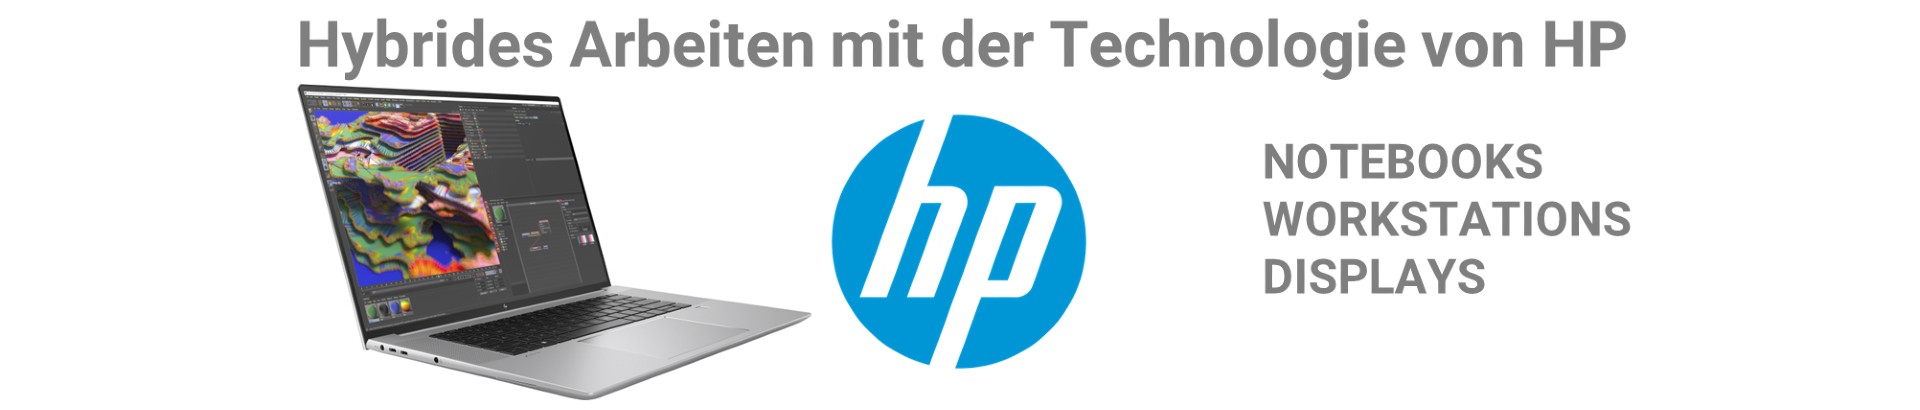 Hybrides Arbeiten mit der Technologie von HP